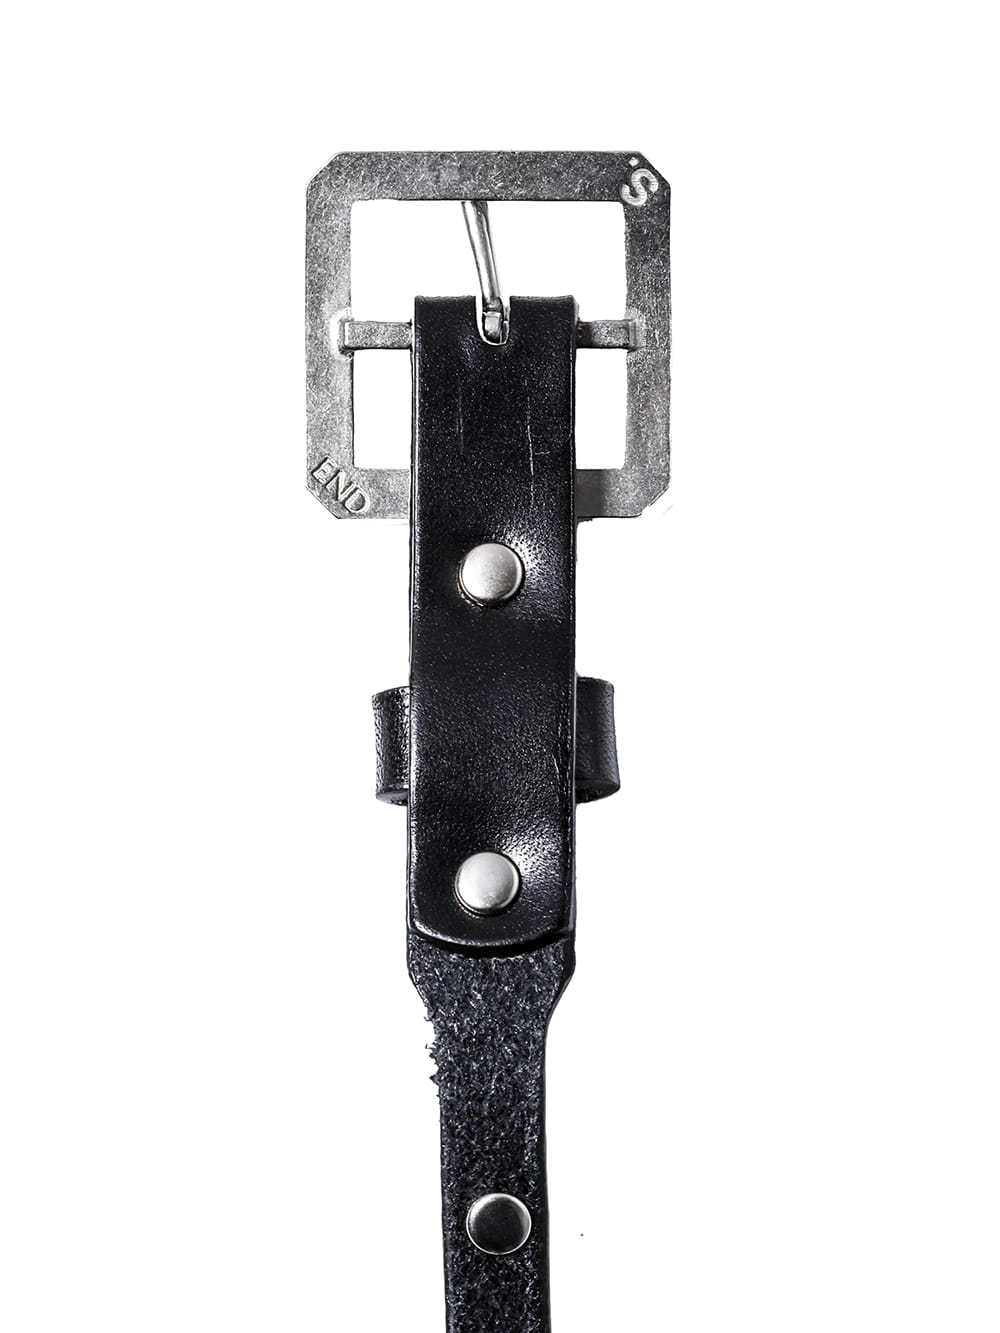 Single pin buckle belt (25mm)